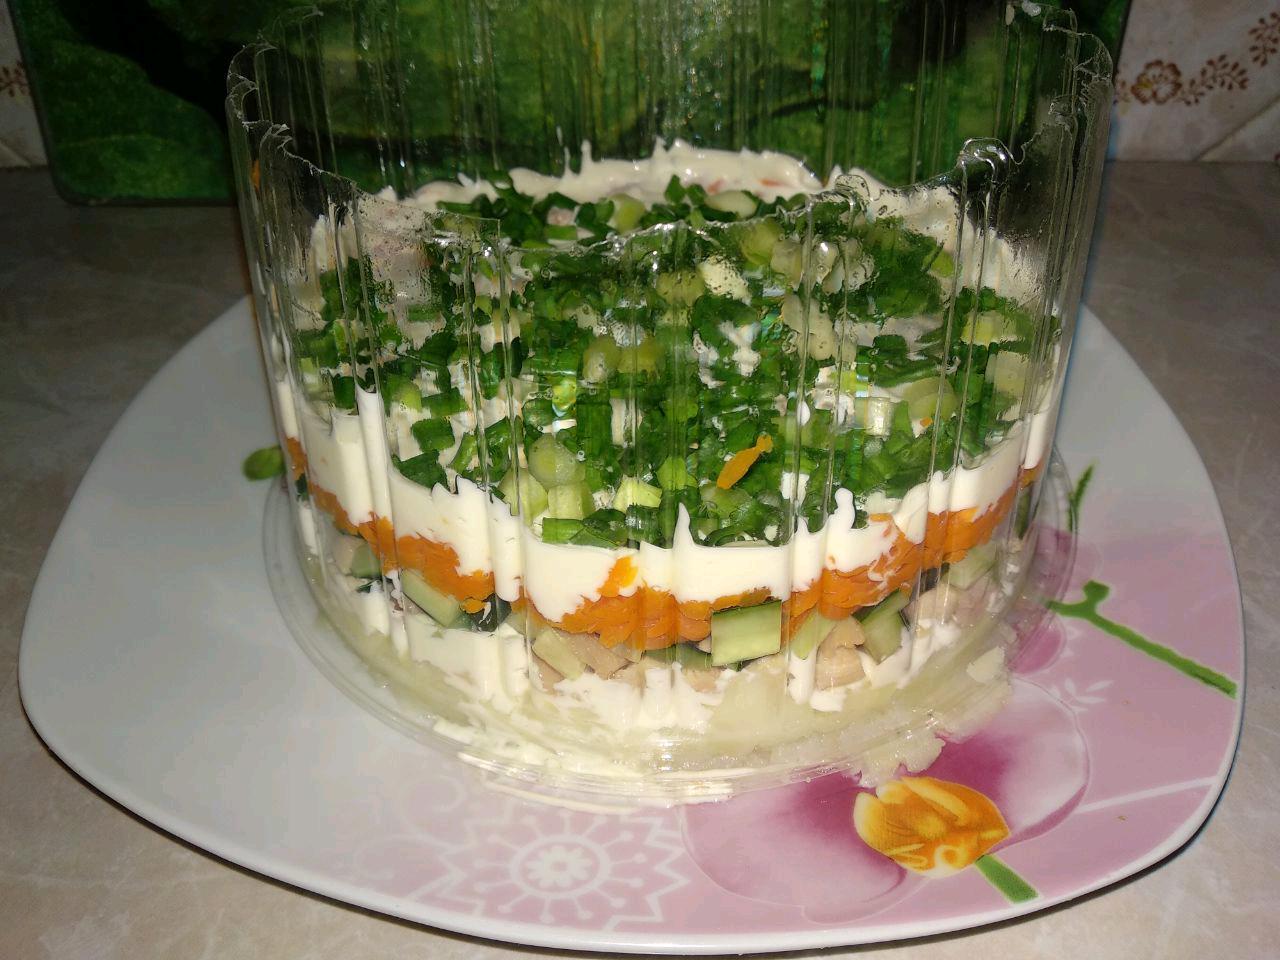 Овощной слоеный салат